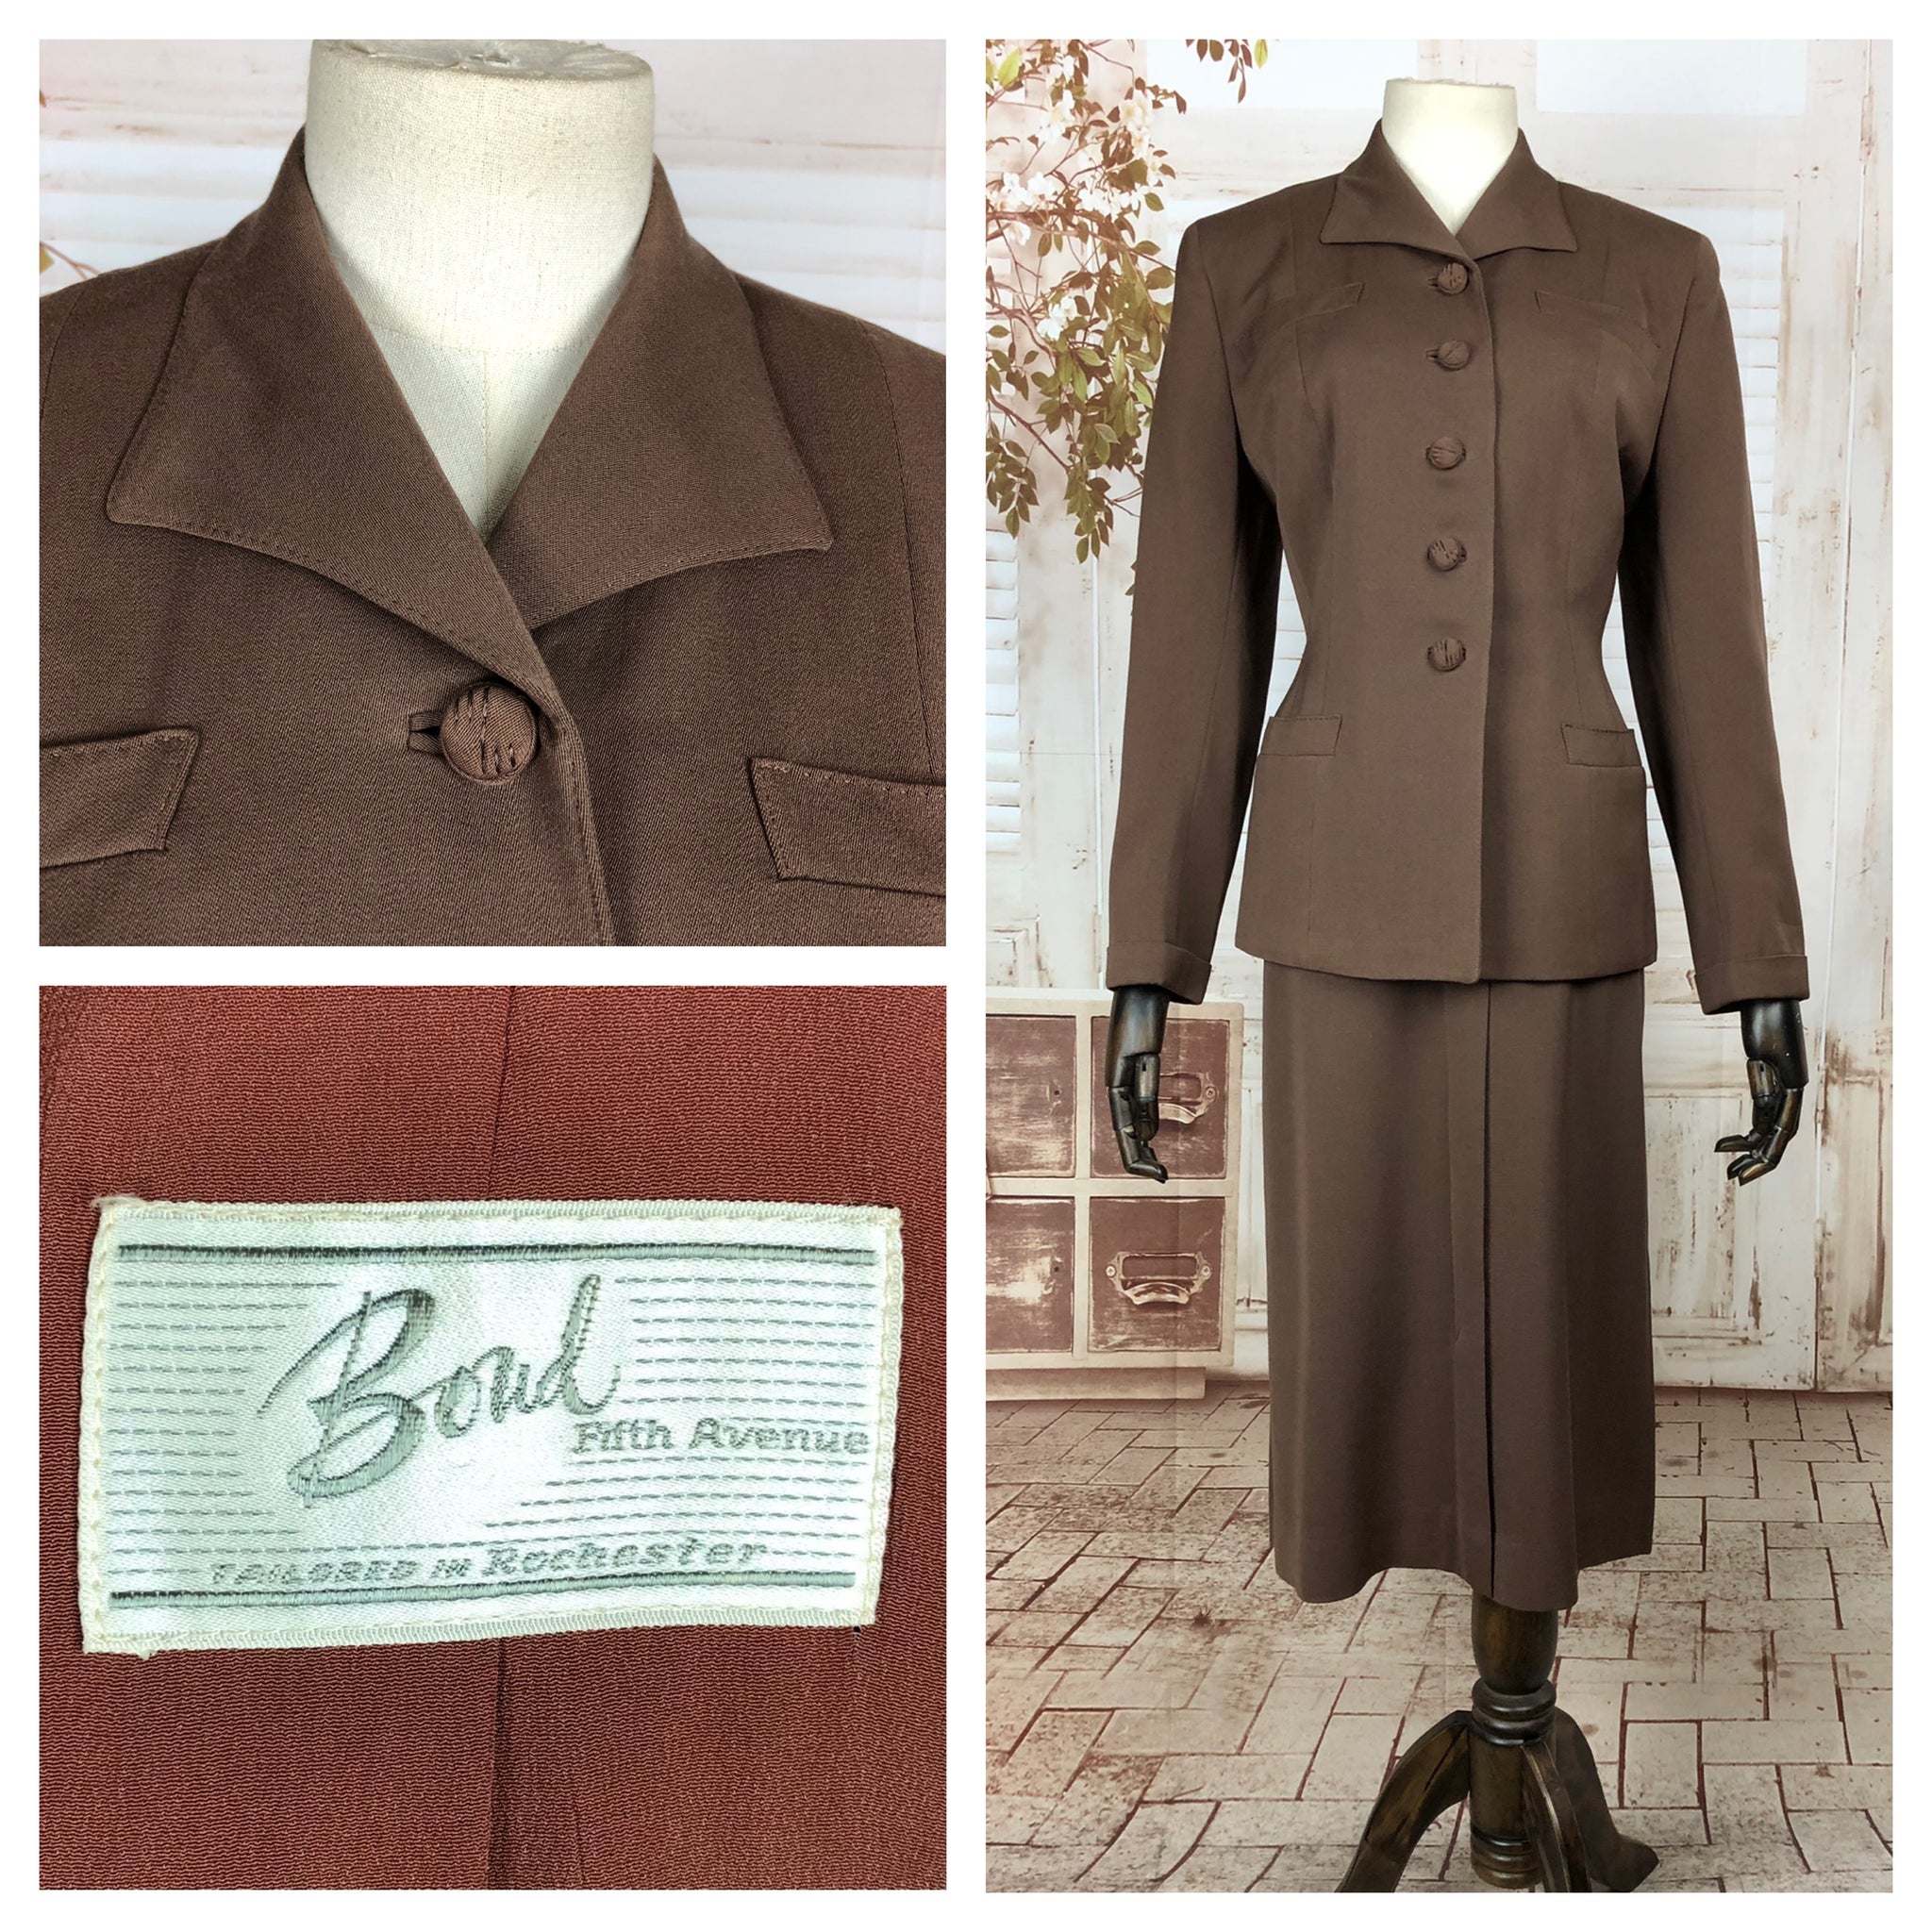 Original 1940s 40s Vintage Brown Gabardine Suit By Bond Fifth Avenue